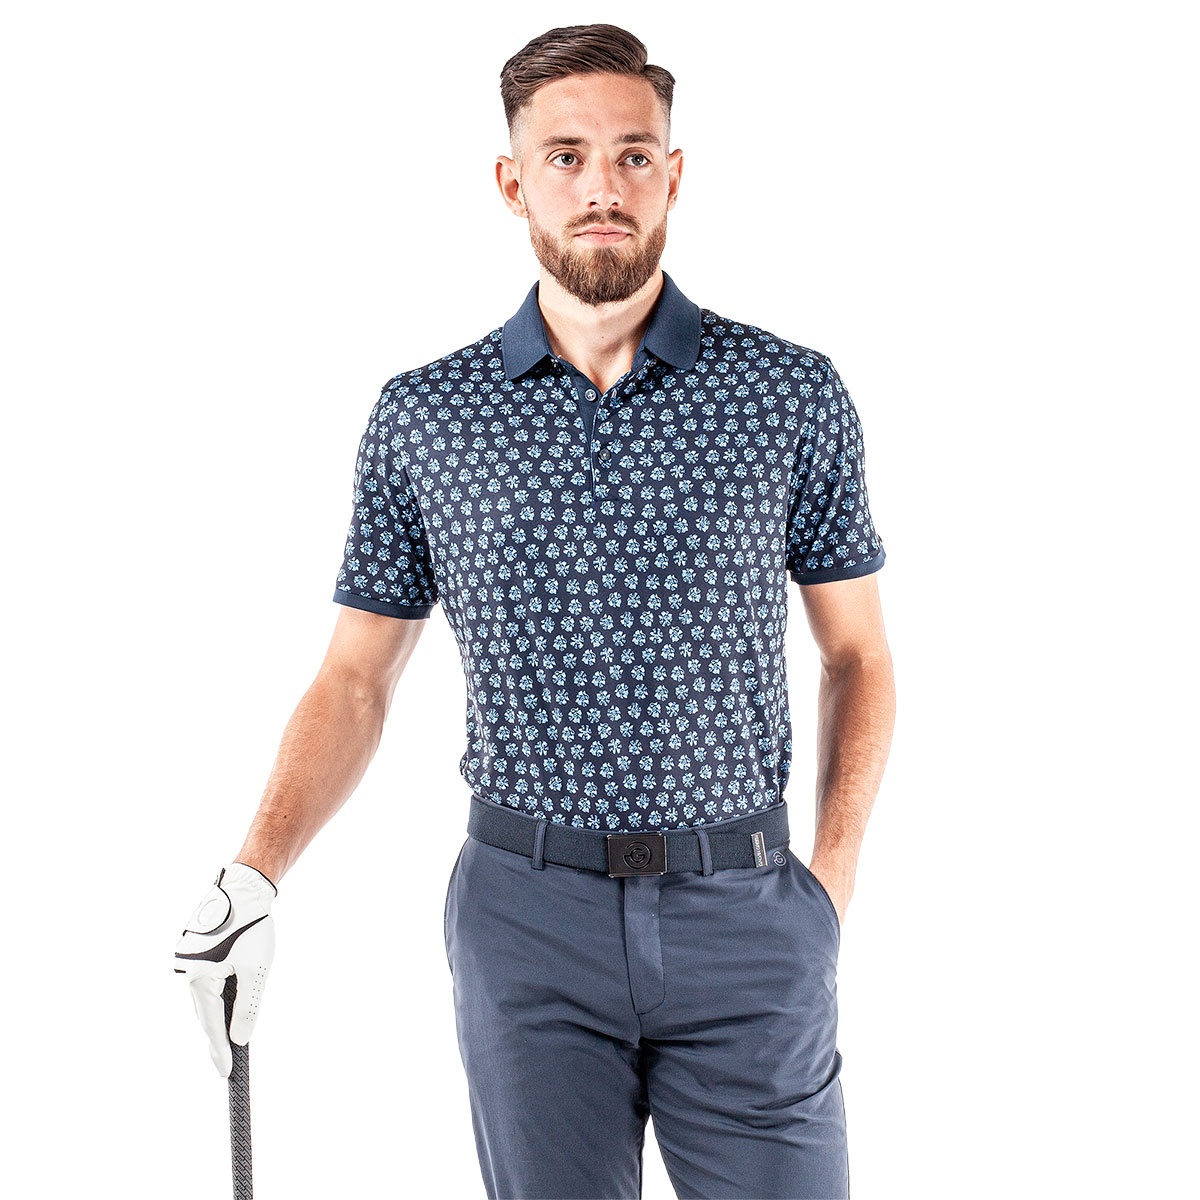 Galvin Green Men's Murphy Golf Polo Shirt from american golf